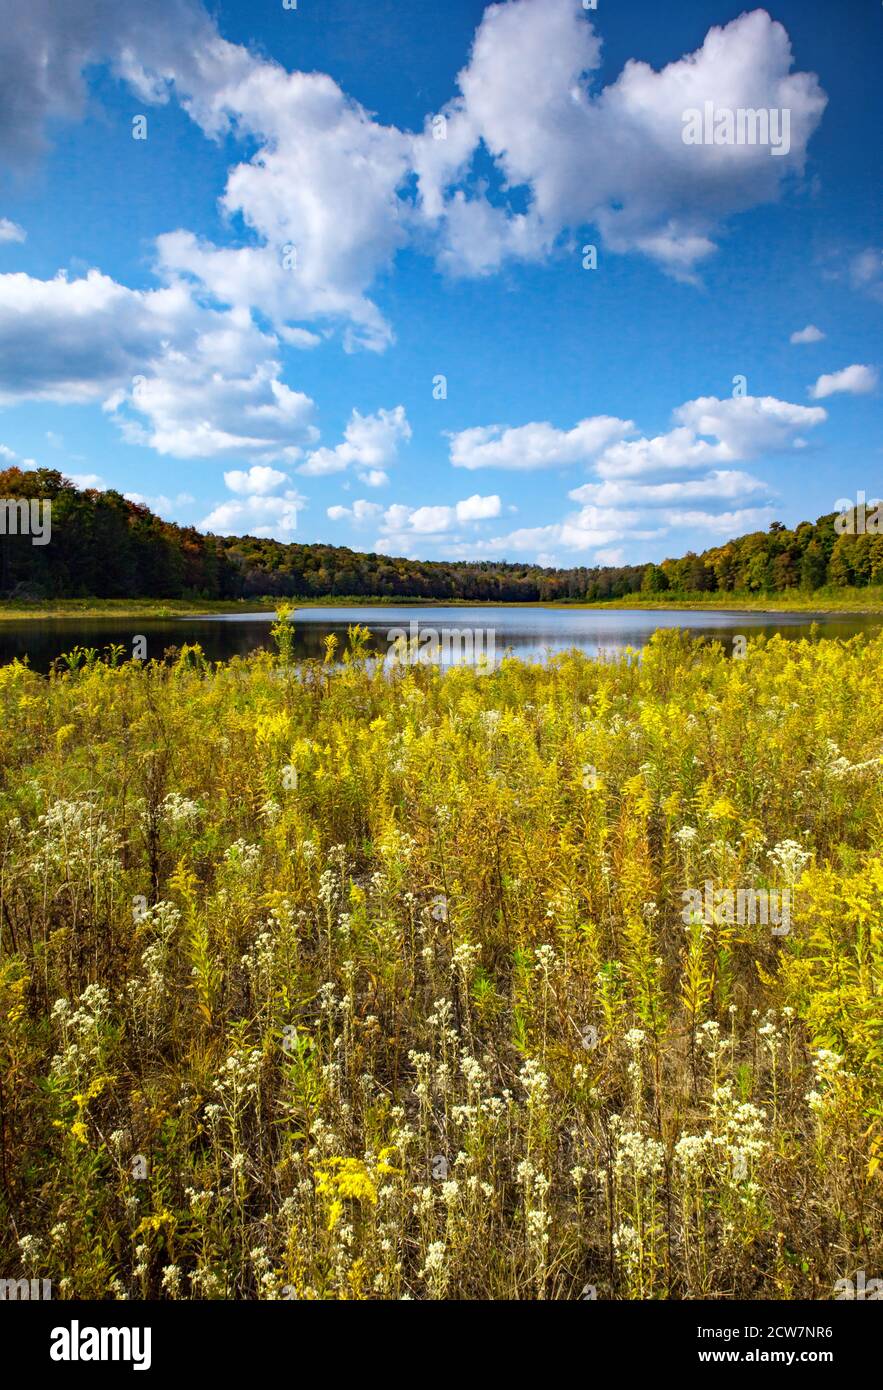 Lower Woods Pond est un lac naturel de 50 hectares situé dans le nord du comté de Wayne, en Pennsylvanie. Pendant des années, la sortie a été damée pour augmenter la taille du lac à 91 Banque D'Images